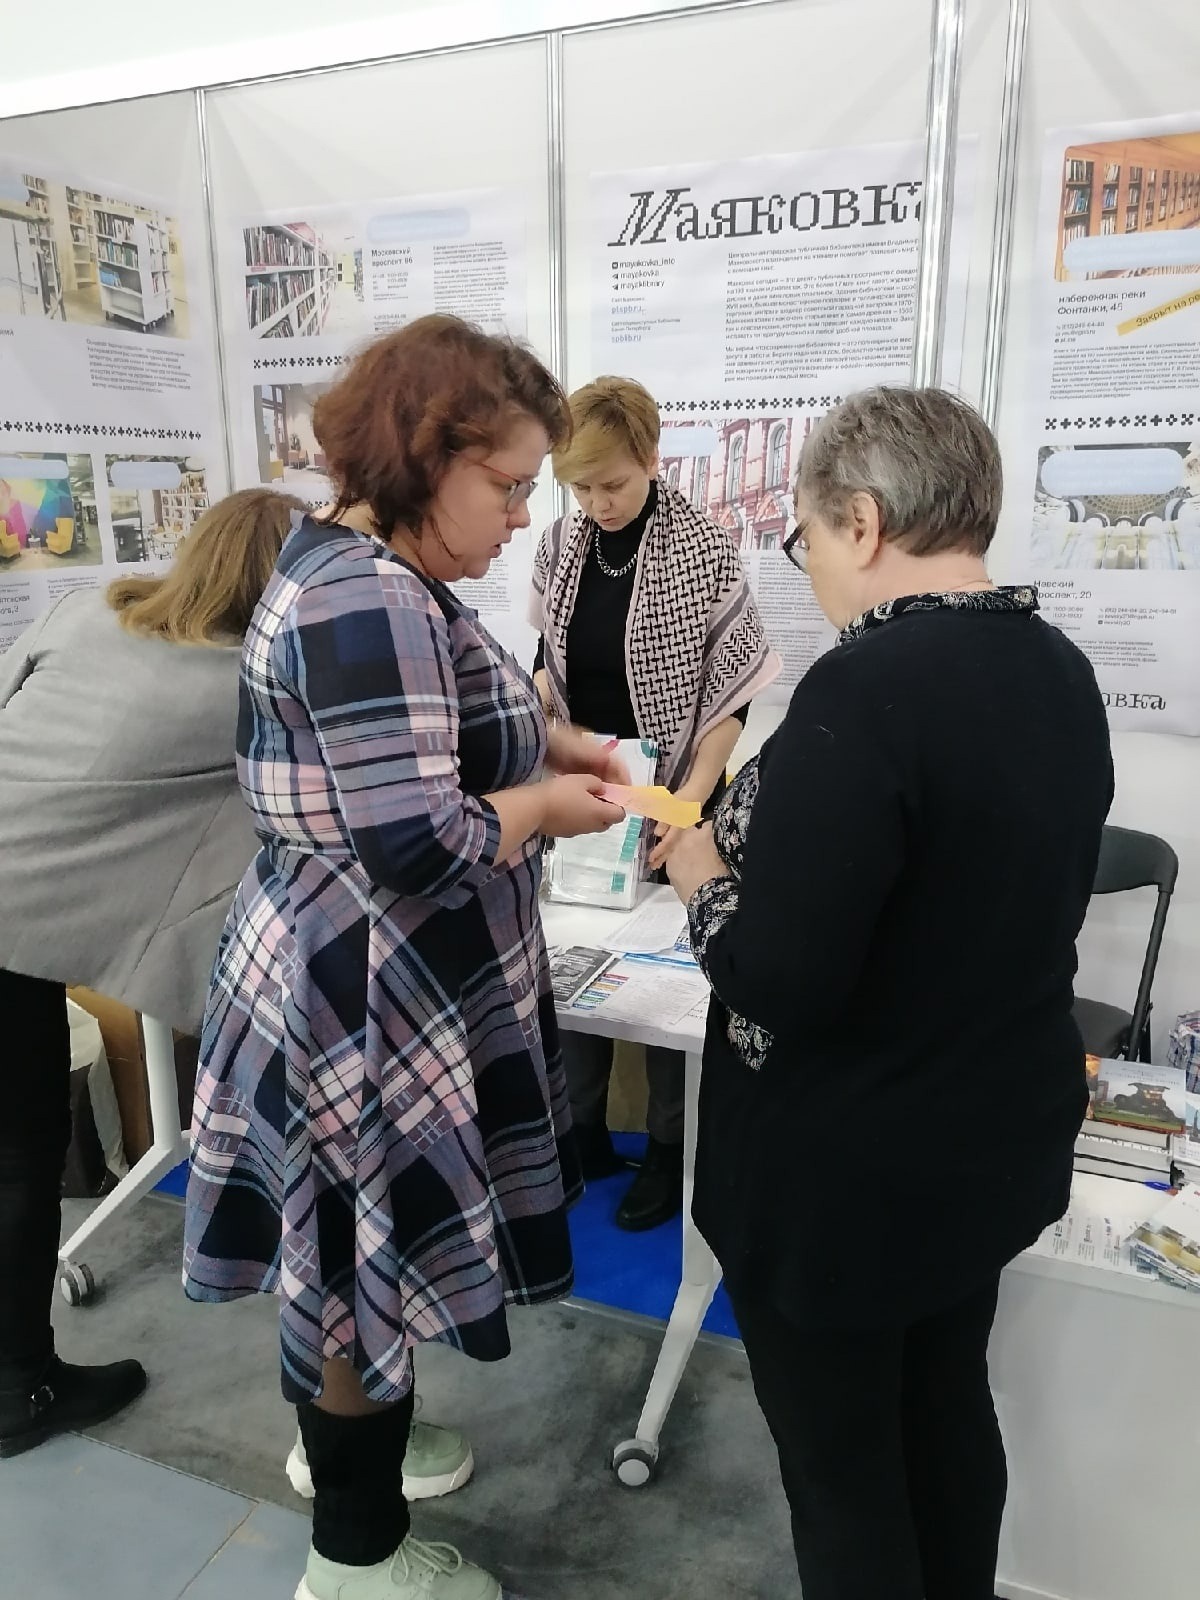 Сотрудники Библиотек Петроградской стороны традиционно принимают участие в работе форума, рассказывая посетителям не только про традиционные библиотечные услуги , но и и о работе общедоступных библиотек Санкт-Петербурга